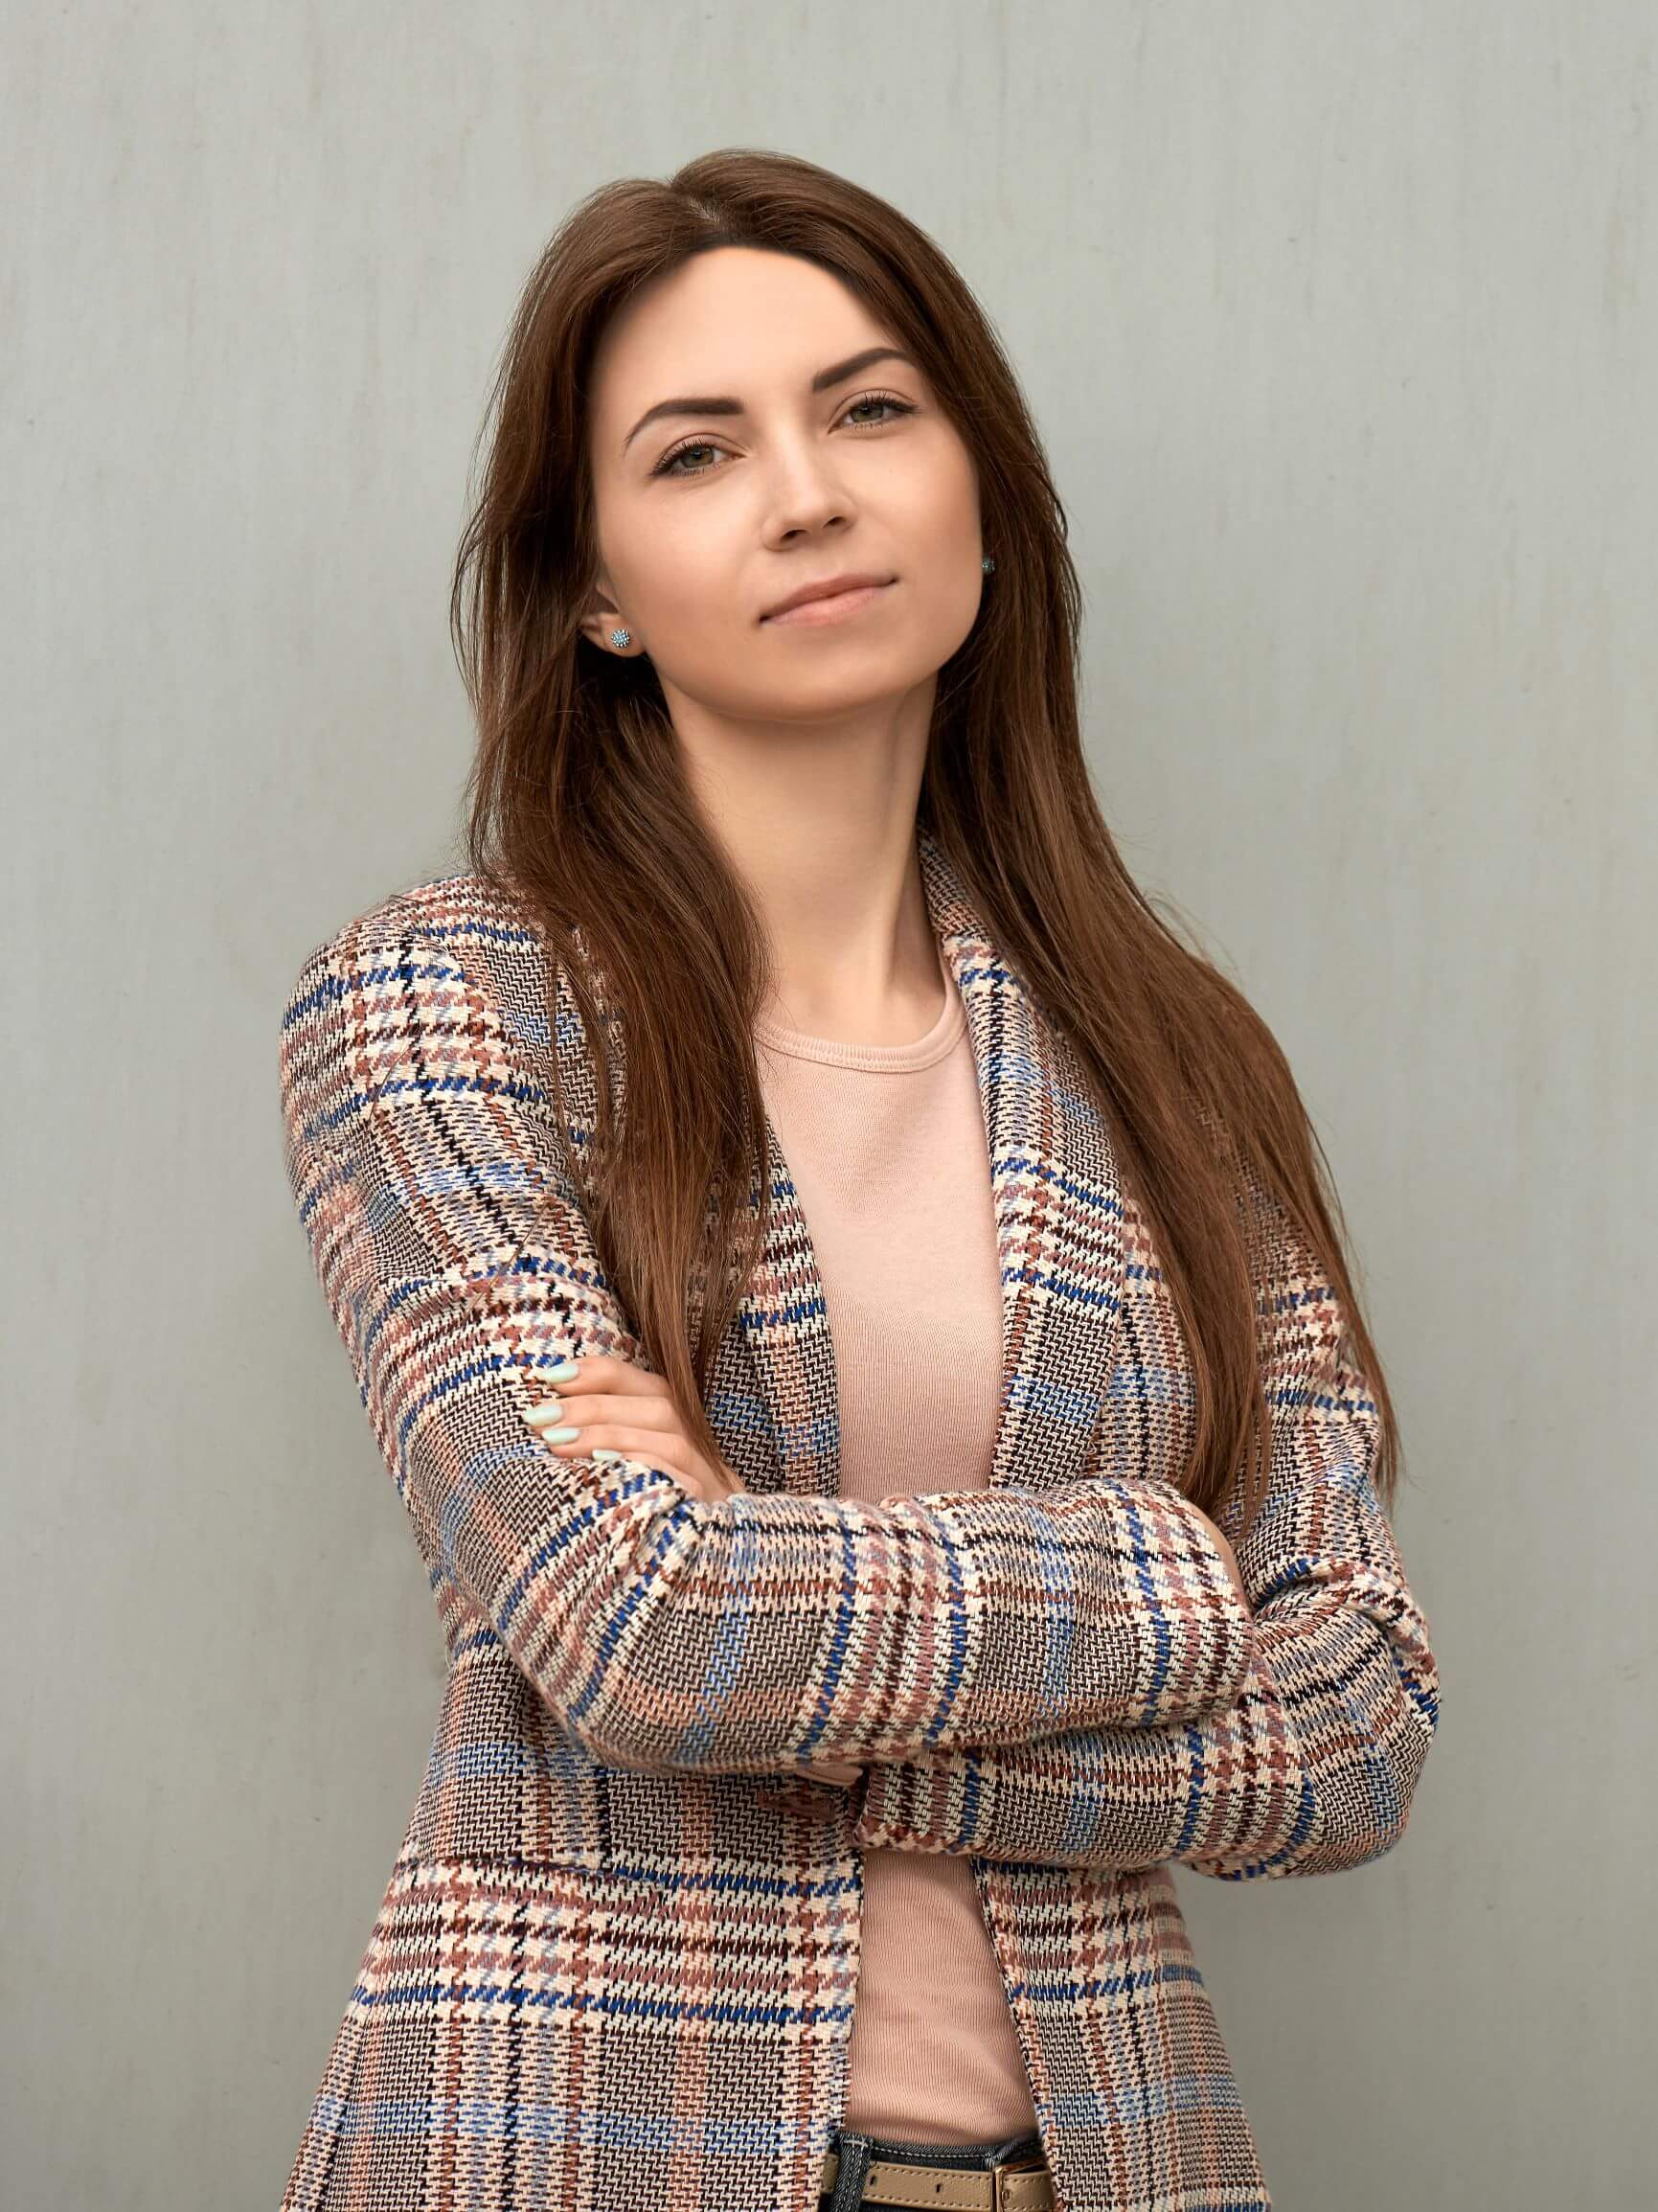 Мария Антонова